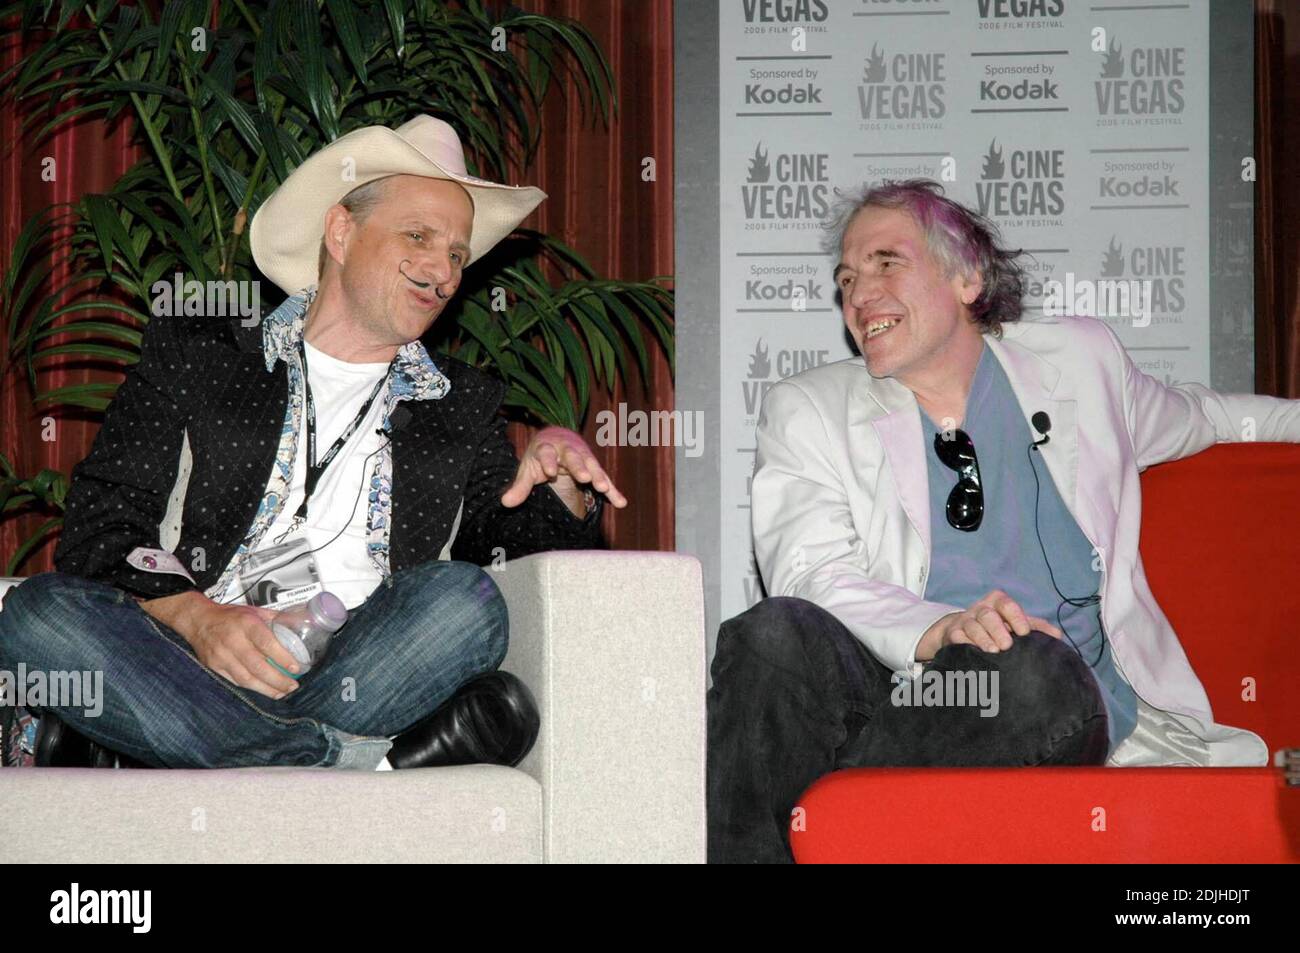 Bobcat Goldthwait und Abel Ferrara ('driller Killer', 'Dangerous Game', 'Mary') während einer Podiumsdiskussion zu 'The Lounge' at the Palms im Rahmen von Cinevegas-Veranstaltungen. Las Vegas, NV 06/11/06 [[kar]] Stockfoto